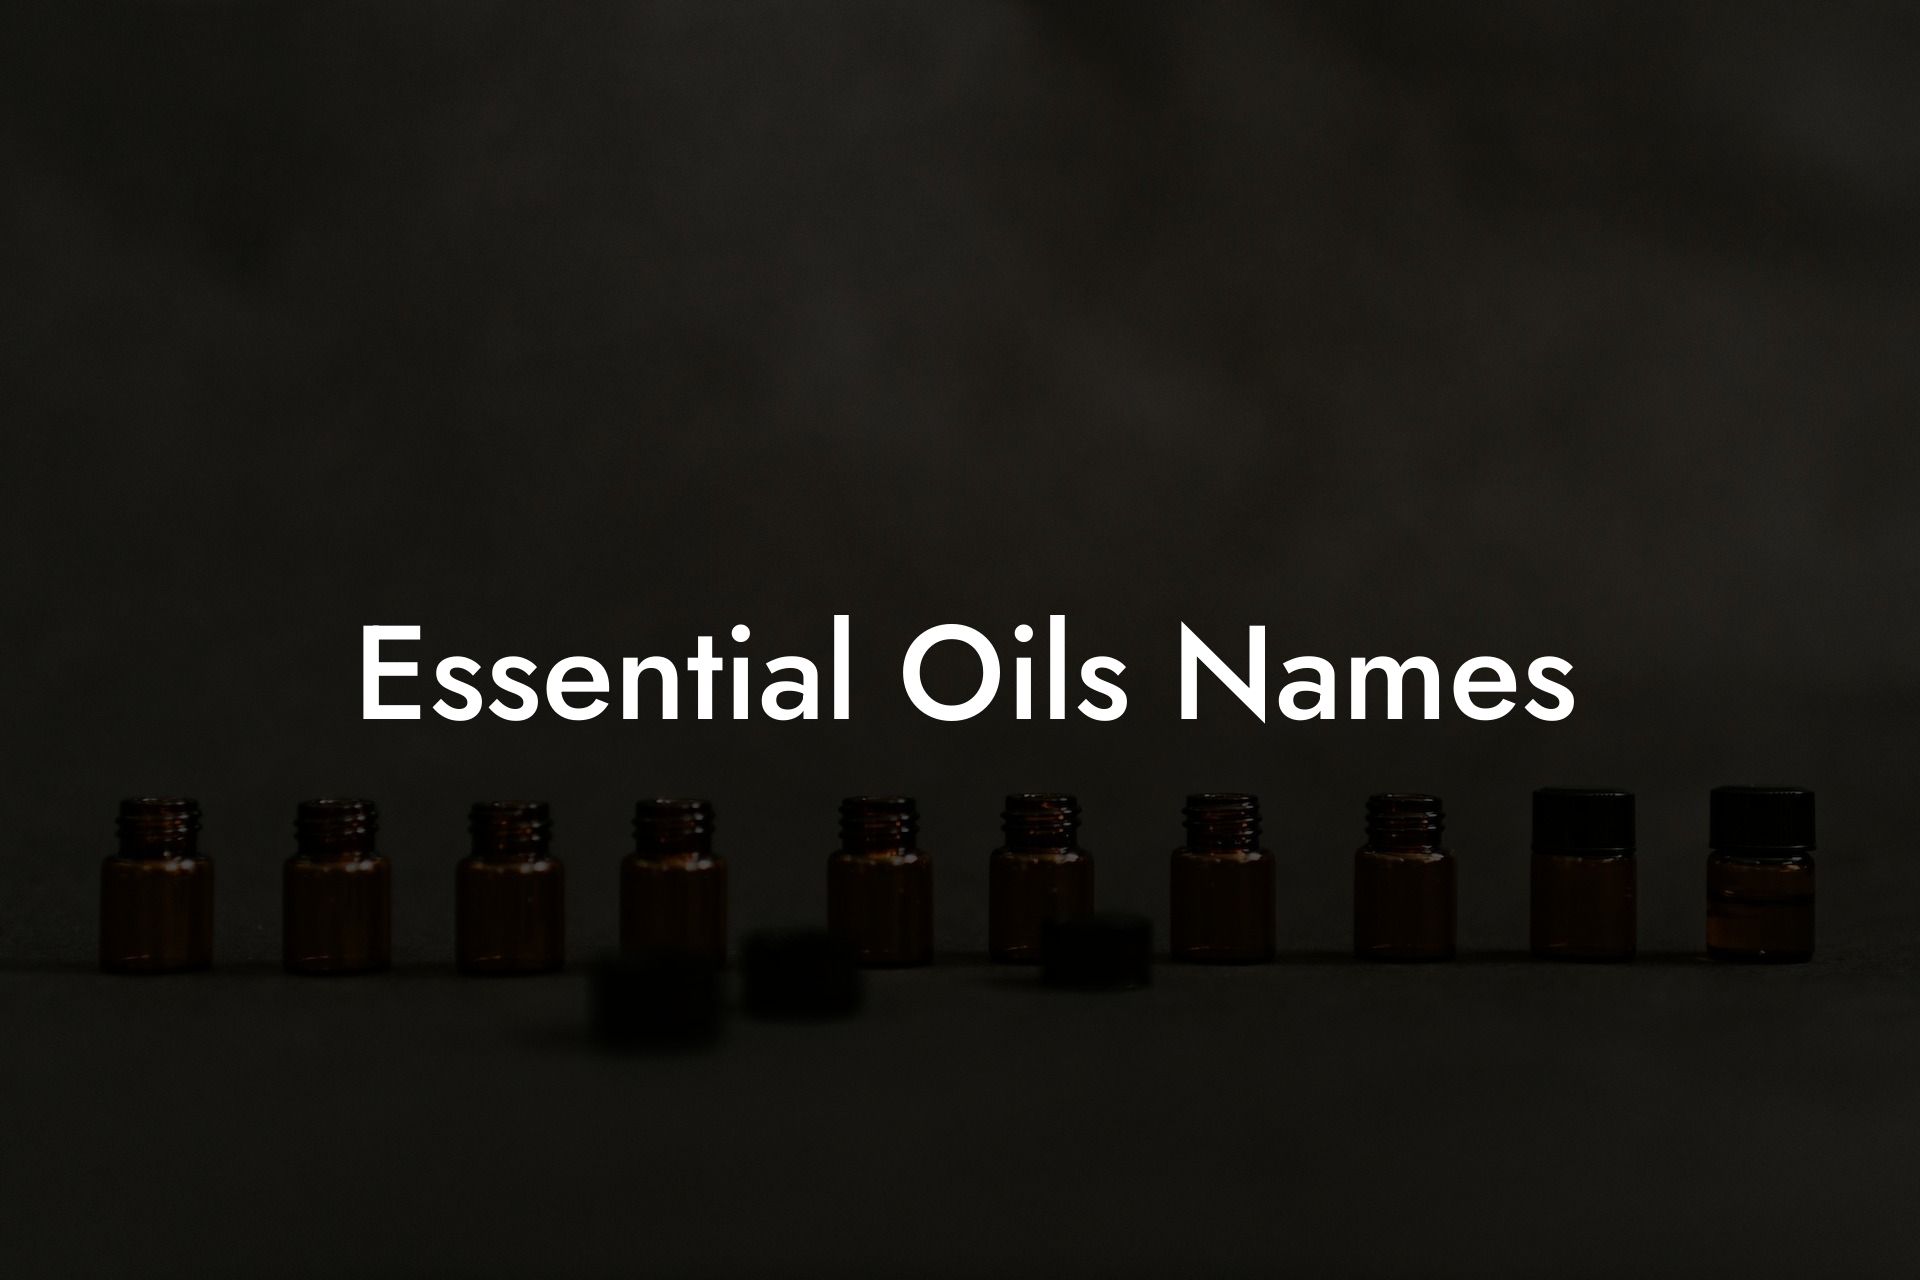 Essential Oils Names